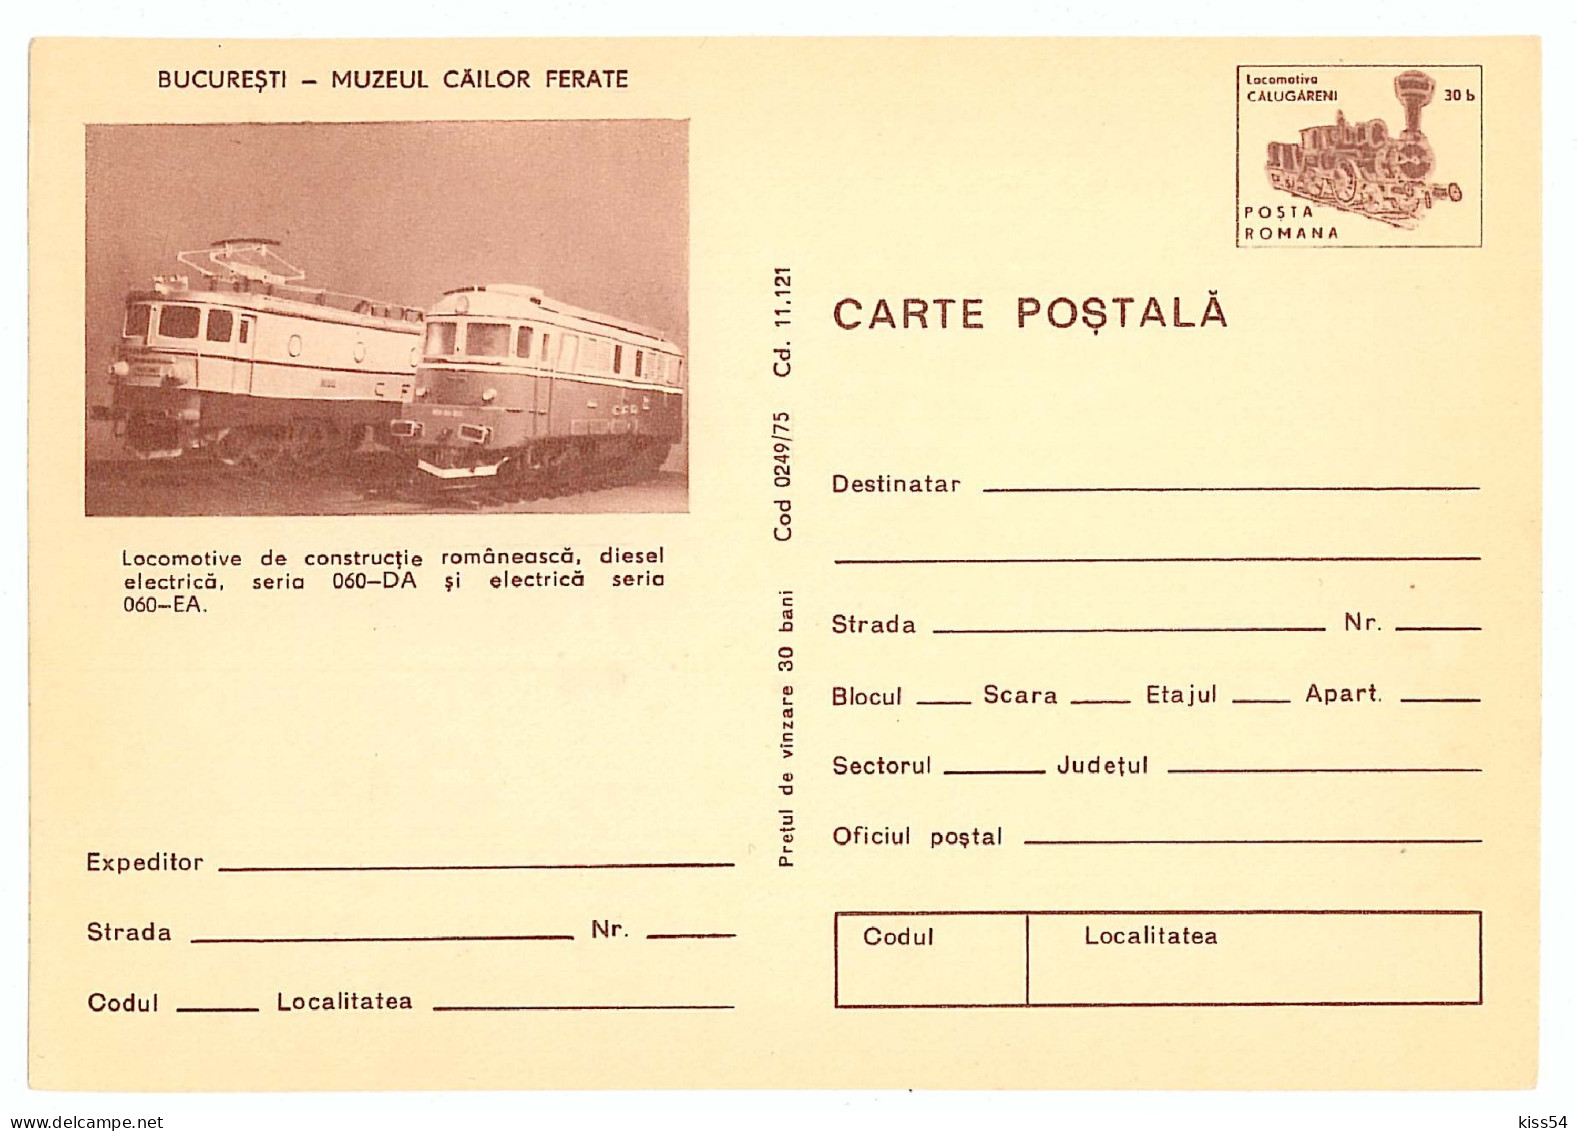 IP 75 - 249 Railway Museum, LOCOMOTIVE, Romania - Stationery - Unused - 1975 - Postal Stationery